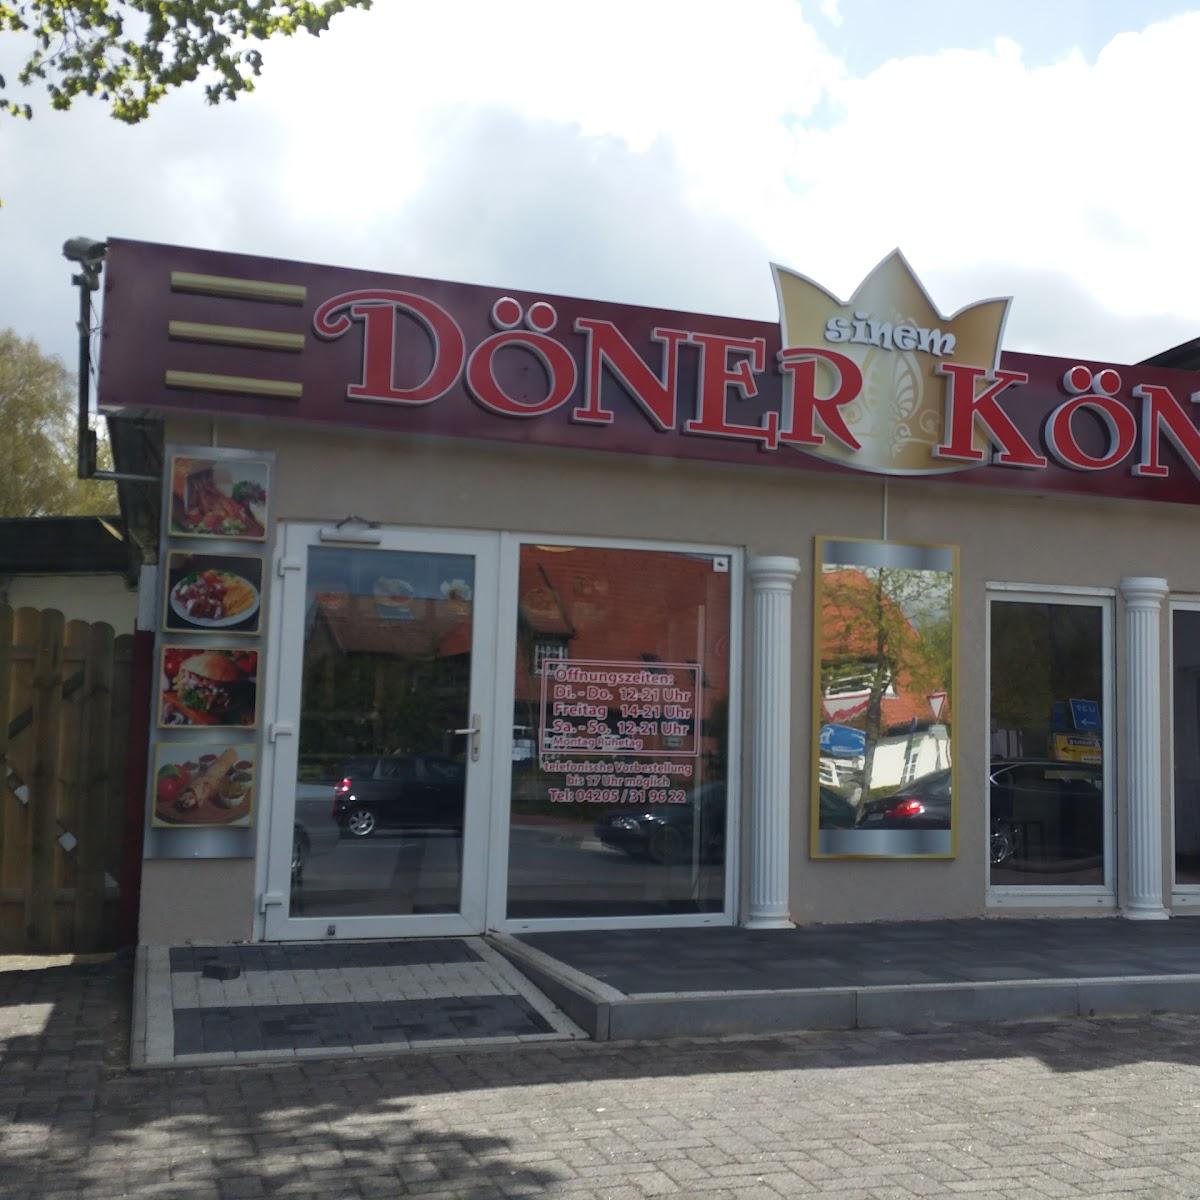 Restaurant "Döner König Sinem" in Ottersberg